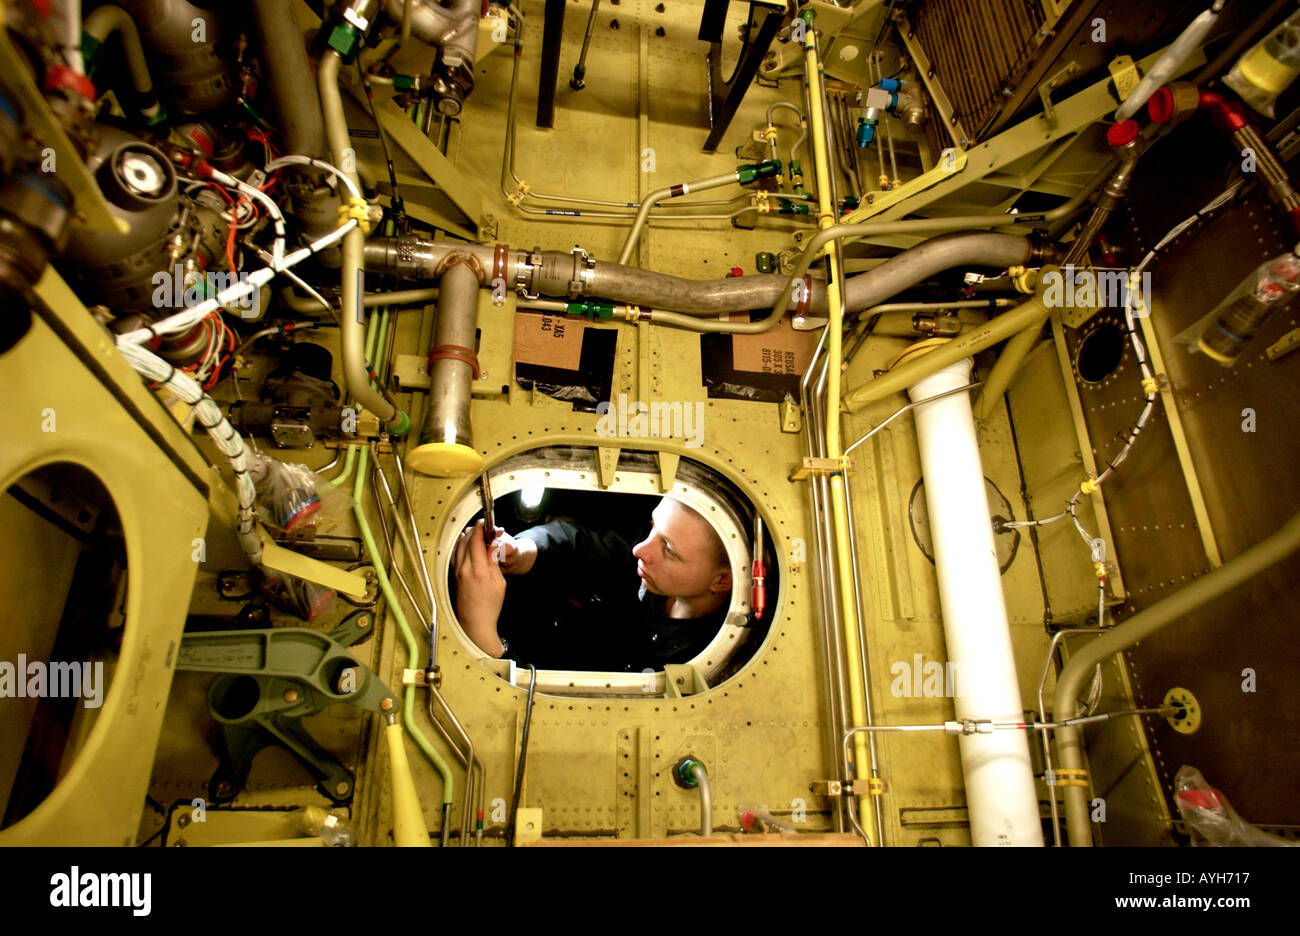 Ein Auszubildender fitter an Westland Hubschrauber Fabrik Yeovil Somerset Avon Großbritannien UK Großbritannien Stockfoto